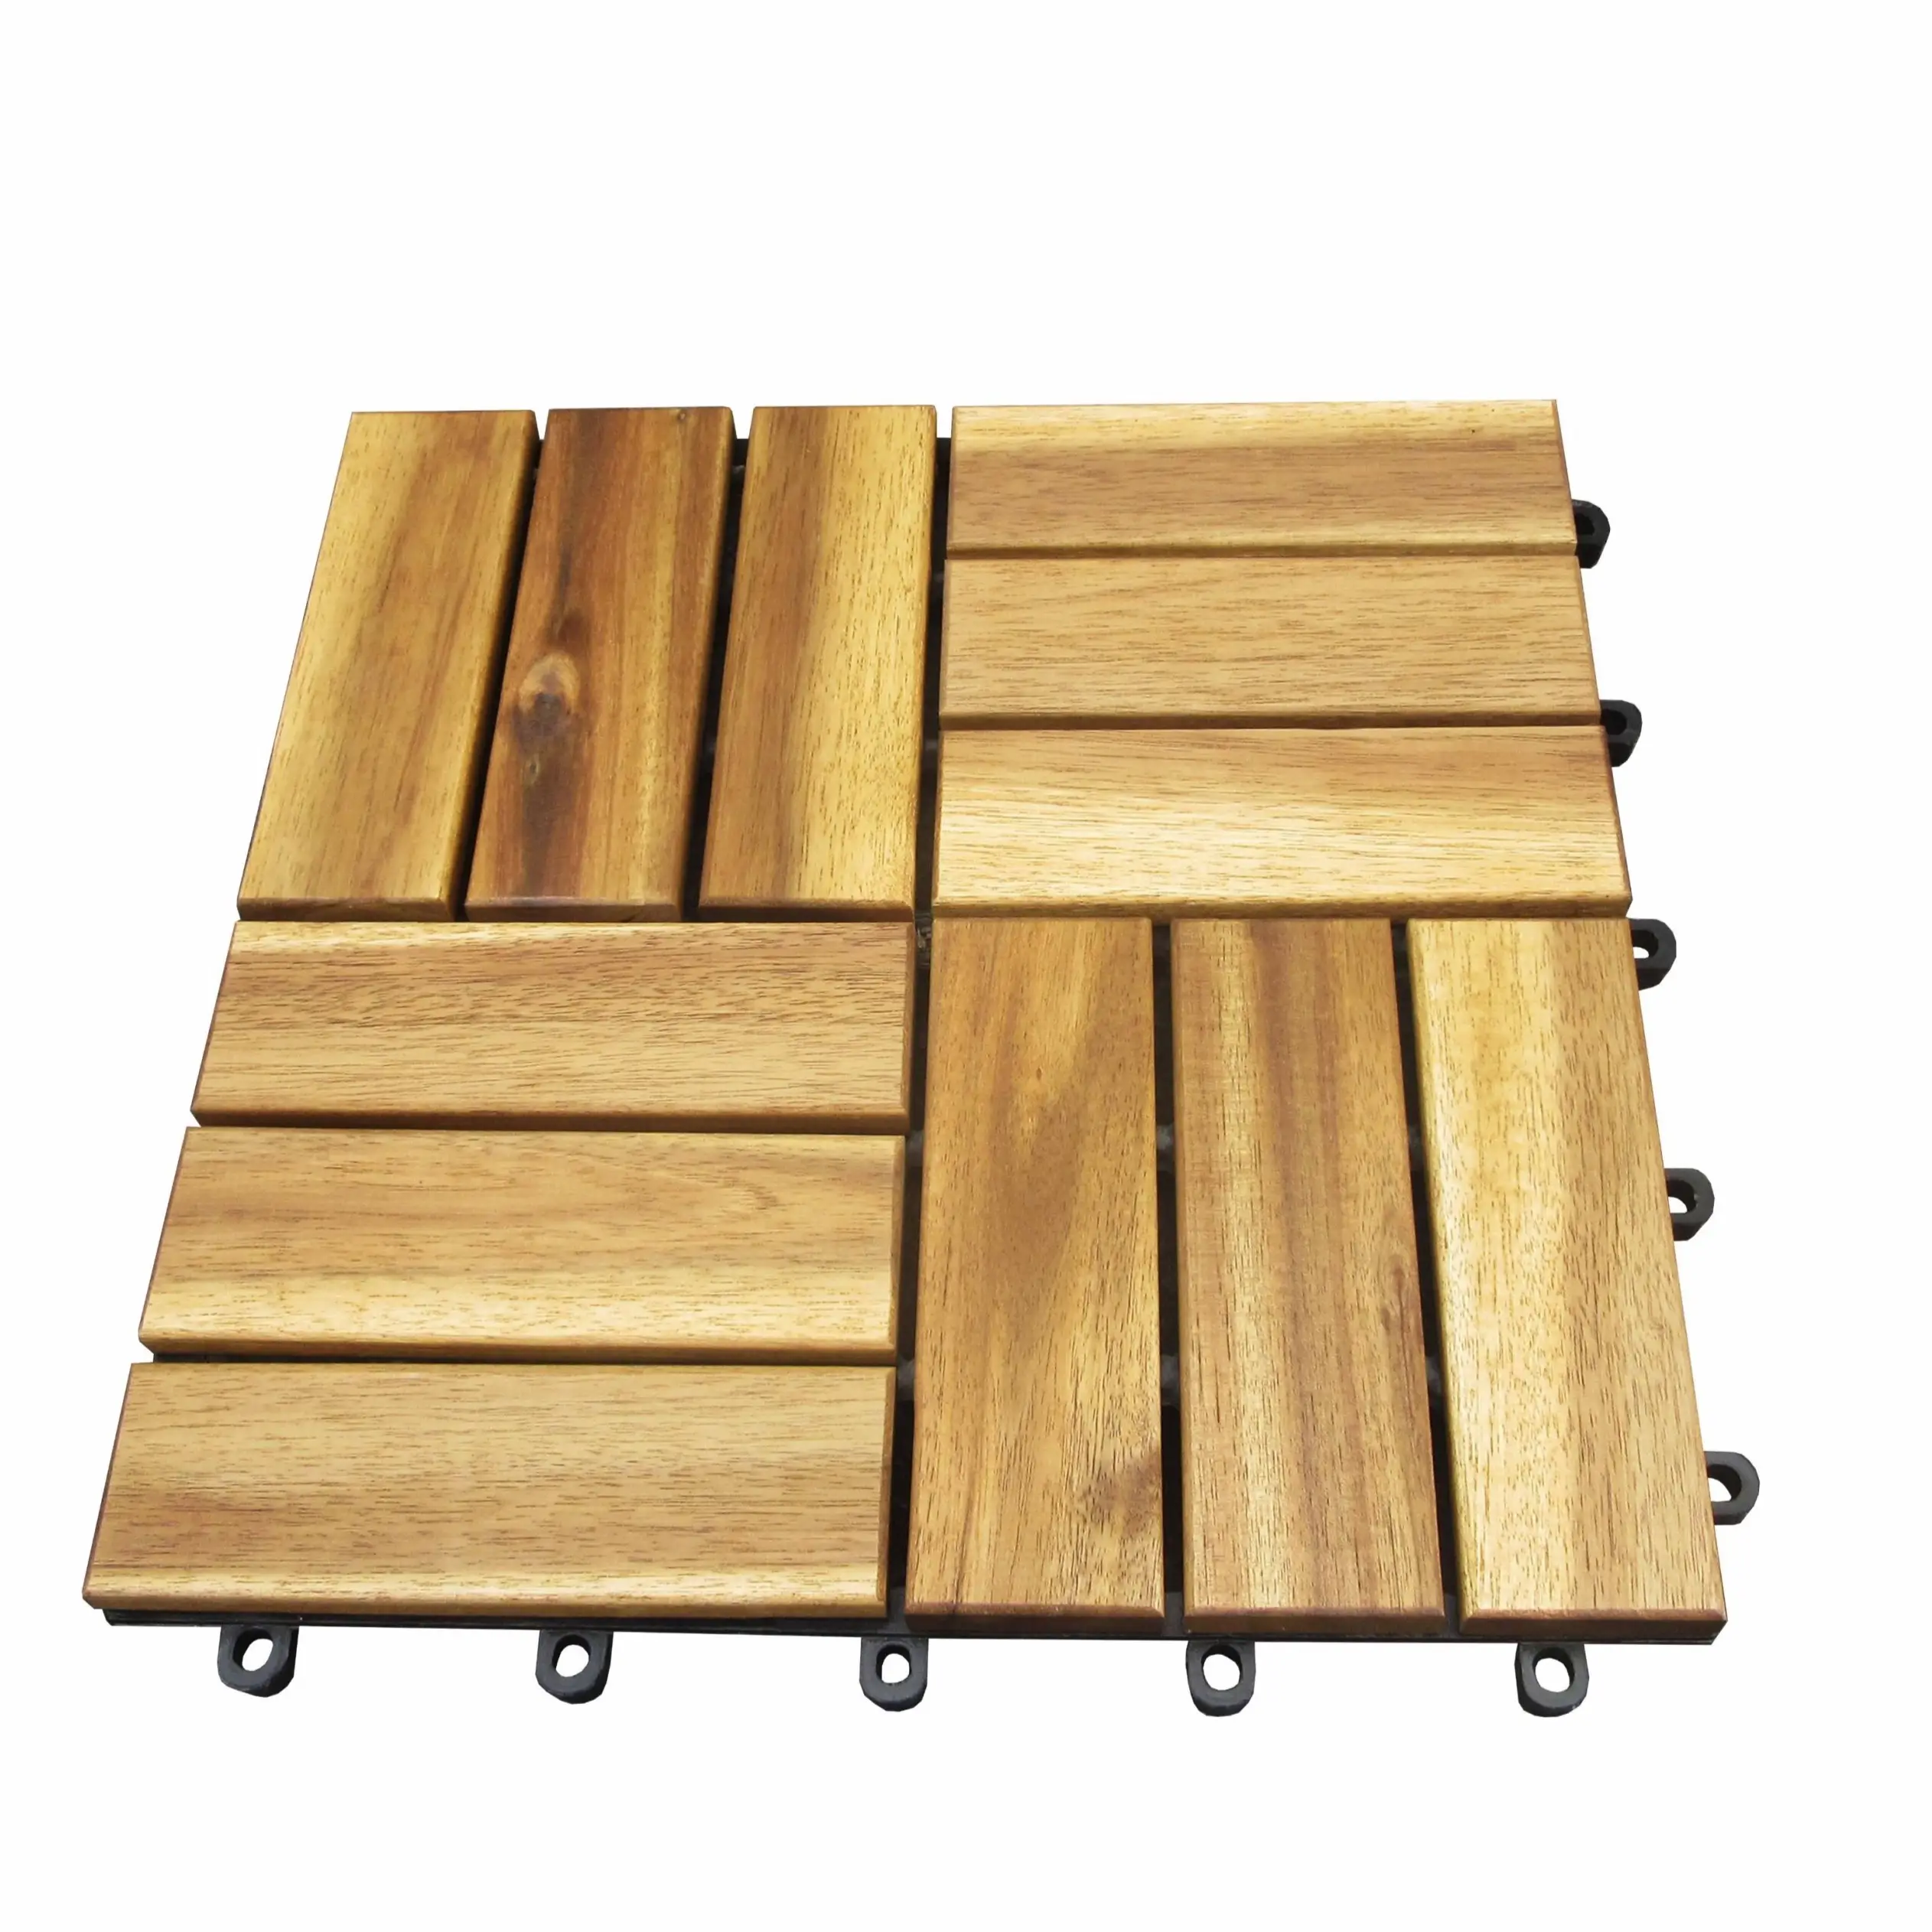 Wholesale Price Floor Decking Diy Wooden Deck Floor Tiles 12 Slats Durable and Sustainable Wooden Tiles Floor for Modern Homes